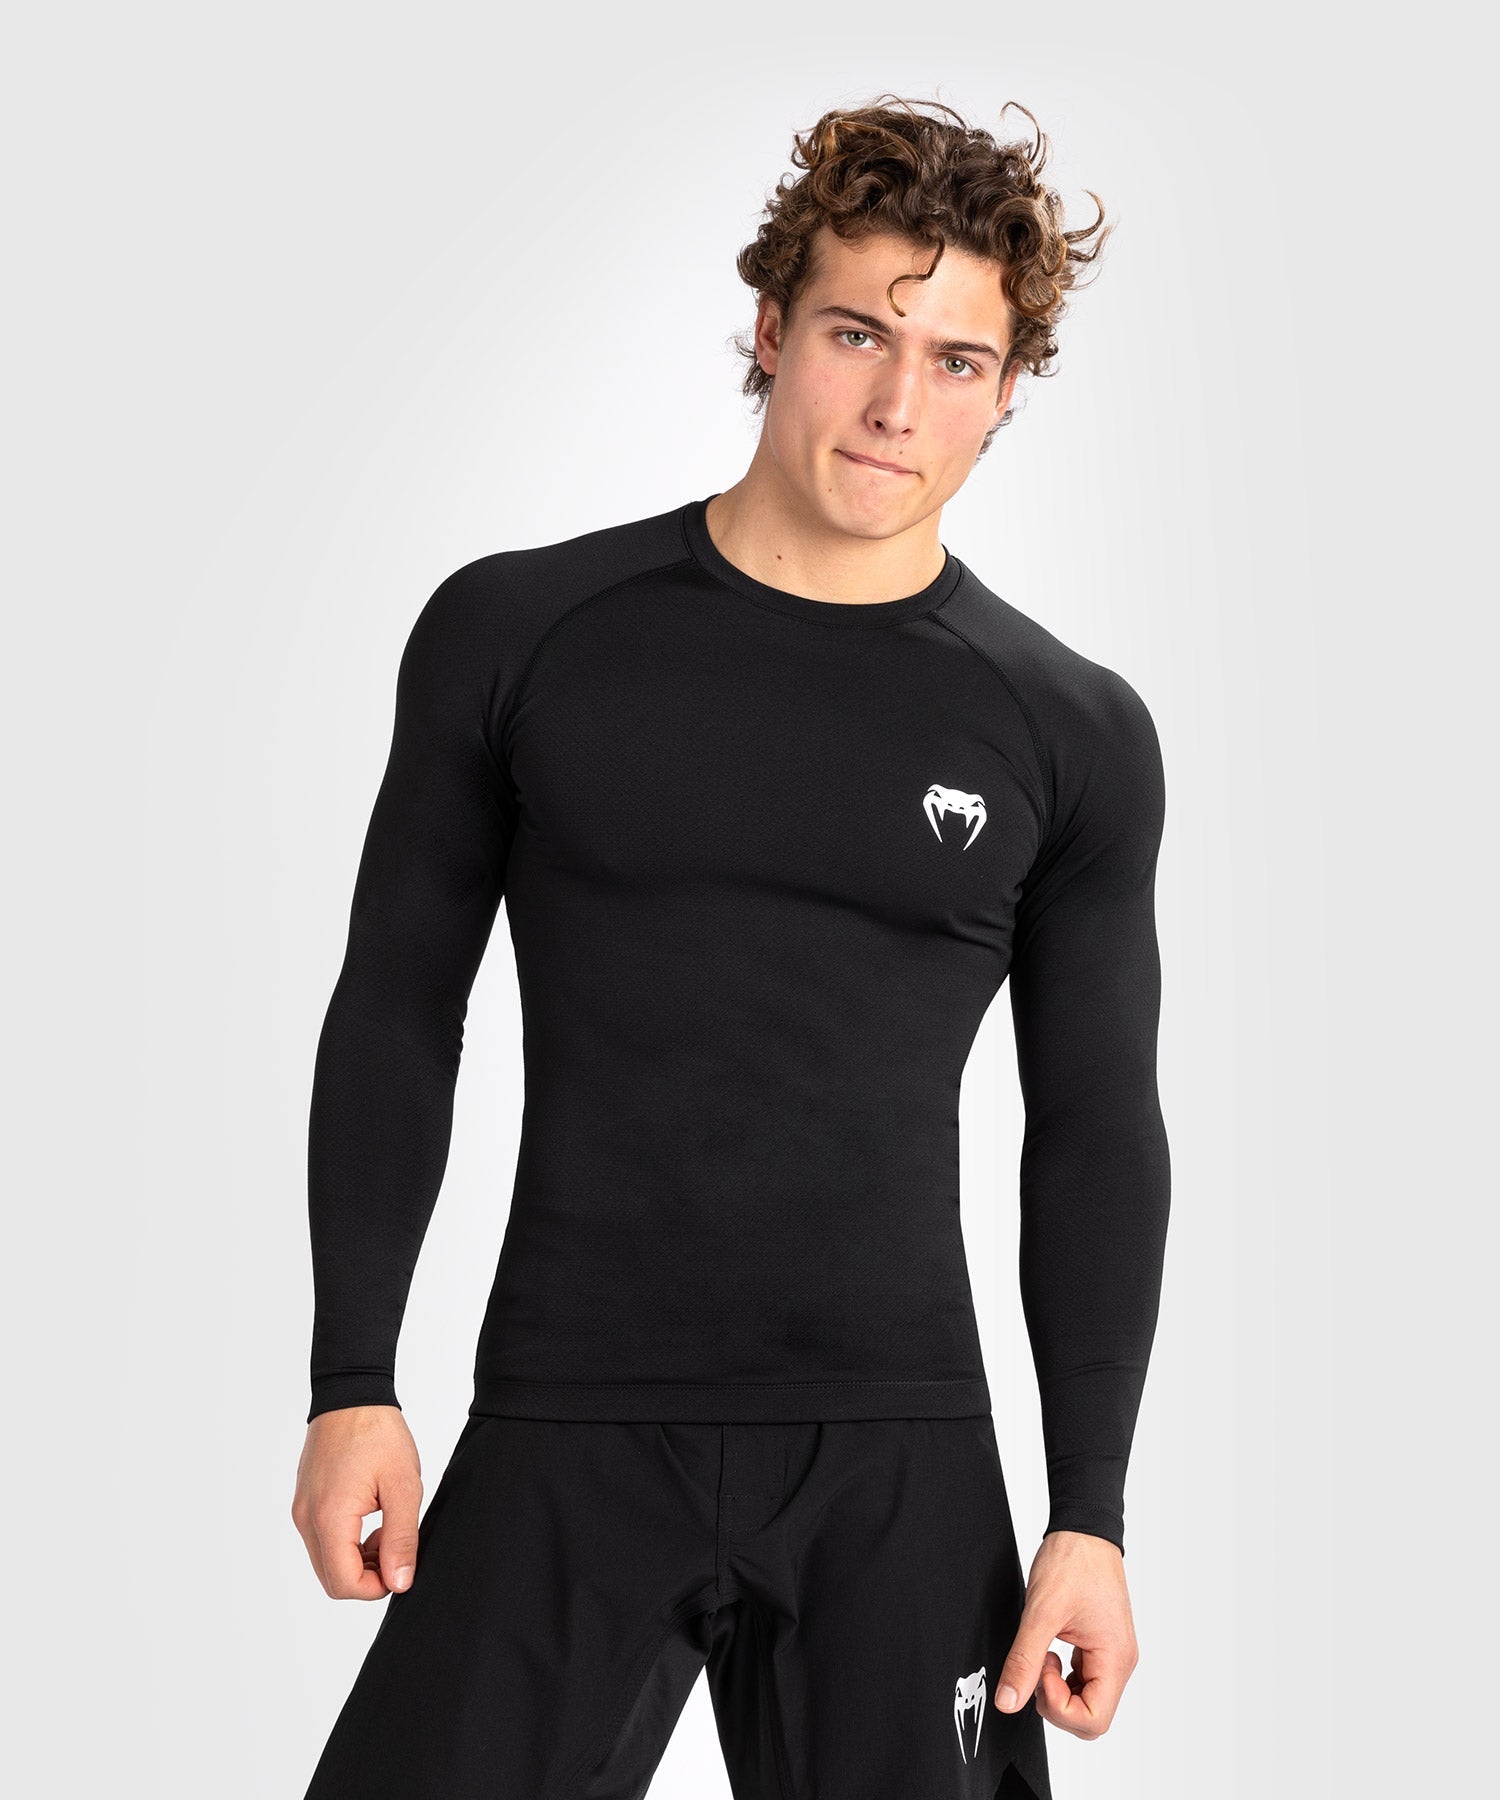 Rashguard à manches longues pour hommes Venum Contender - Noir/Blanc - T-shirts de compression